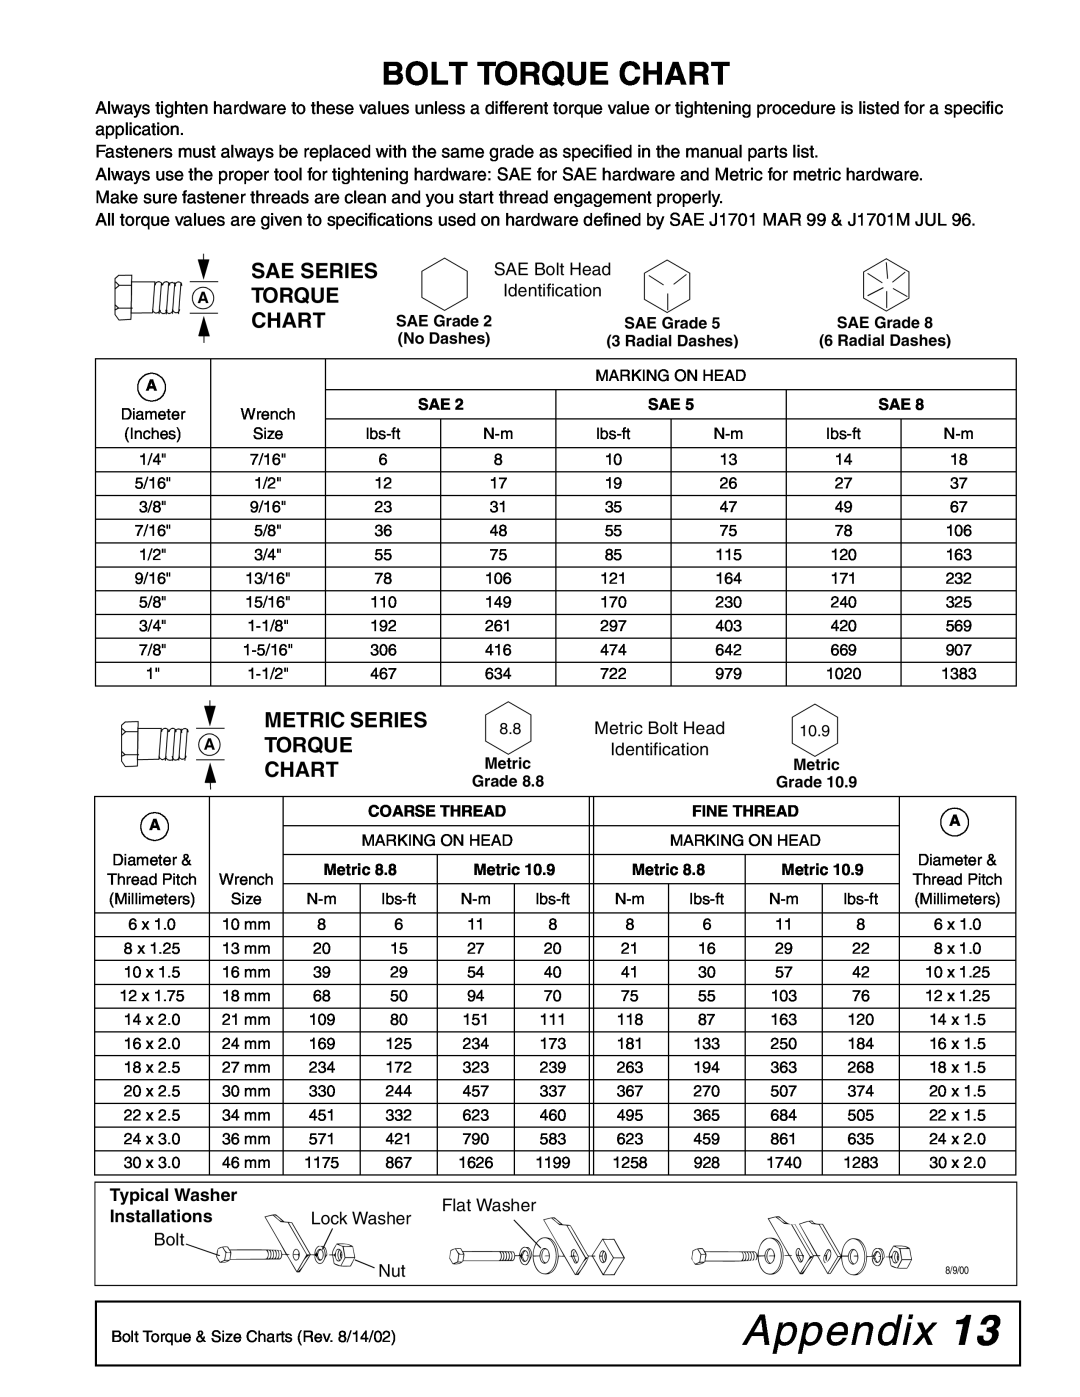 Woods Equipment BH80X, MANO472, BH70X manual Appendix, Bolt Torque Chart, Sae Series A Torque Chart, Metric Series 